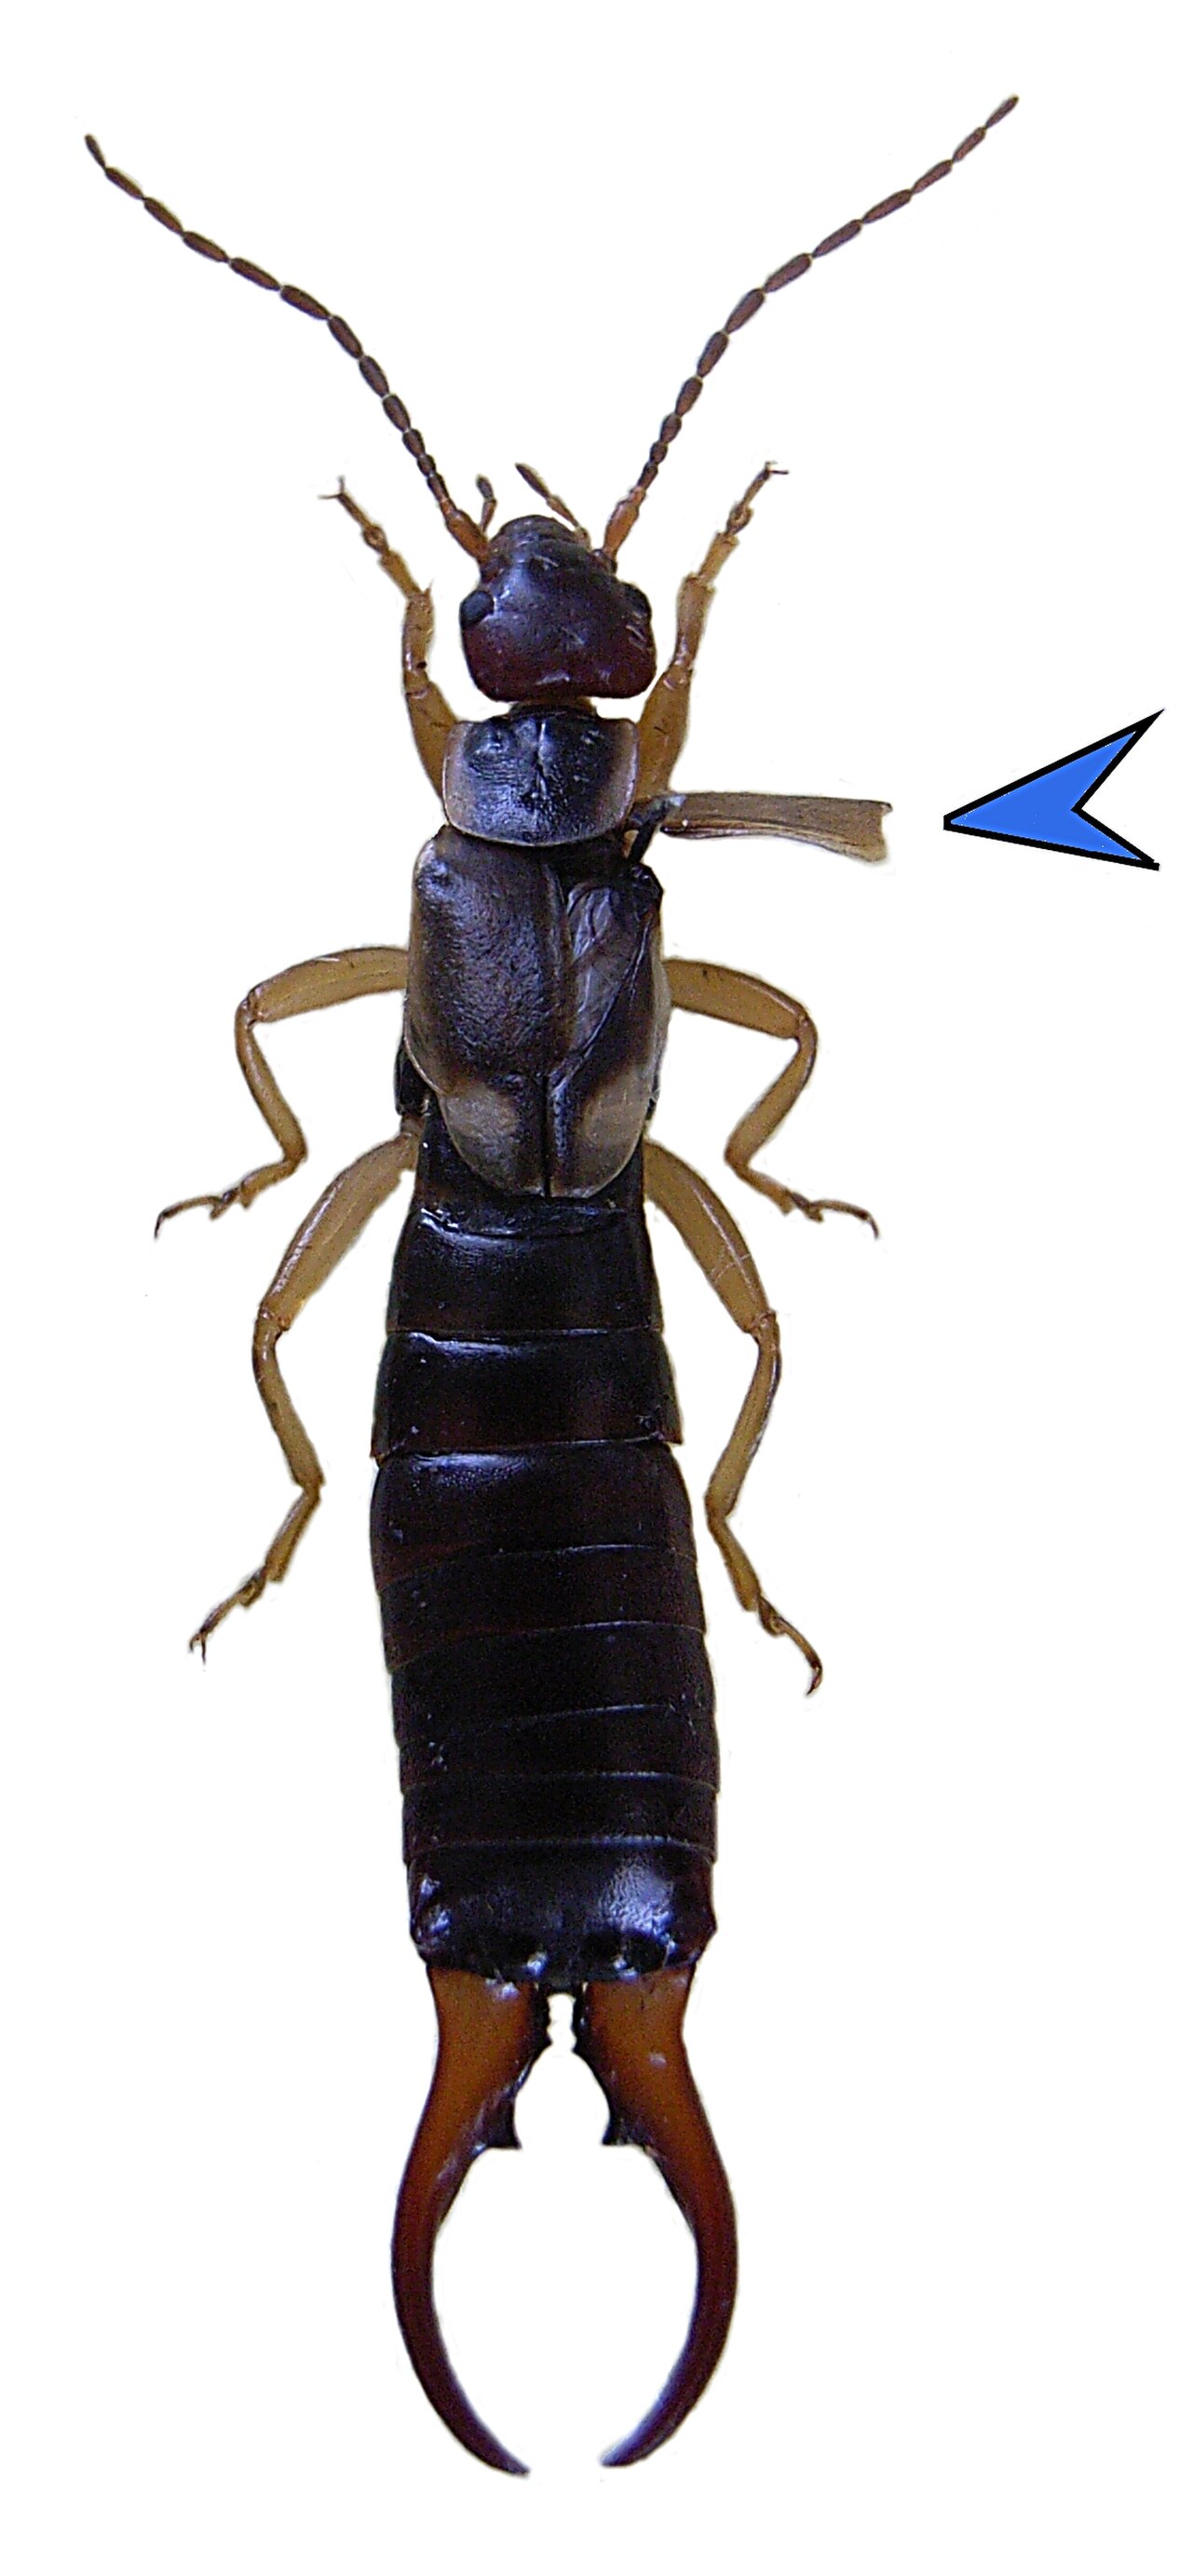 بعض انواع الحشرات مثل الجراد واليعسوب والنمل الابيض دورة حياتها